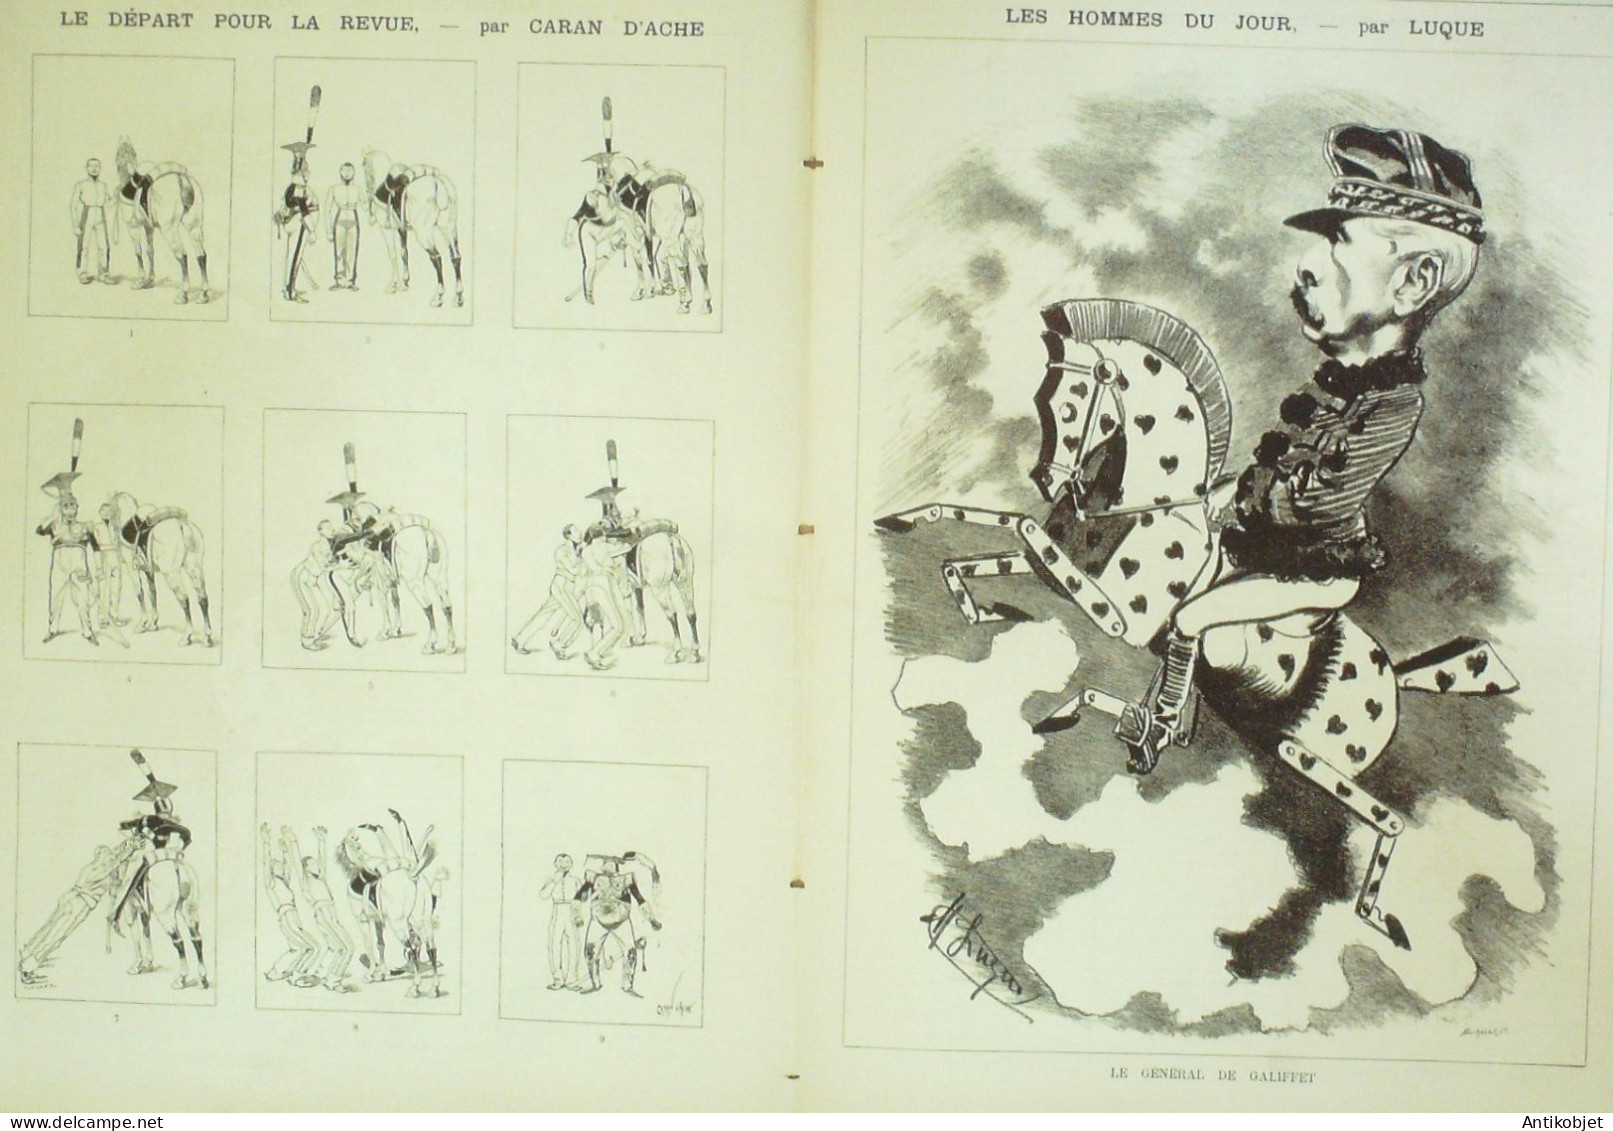 La Caricature 1885 N°298 Amour Jaloux Caran D'Ache Gino Job De Galifet Paar Luque Caran D'Ache - Revues Anciennes - Avant 1900